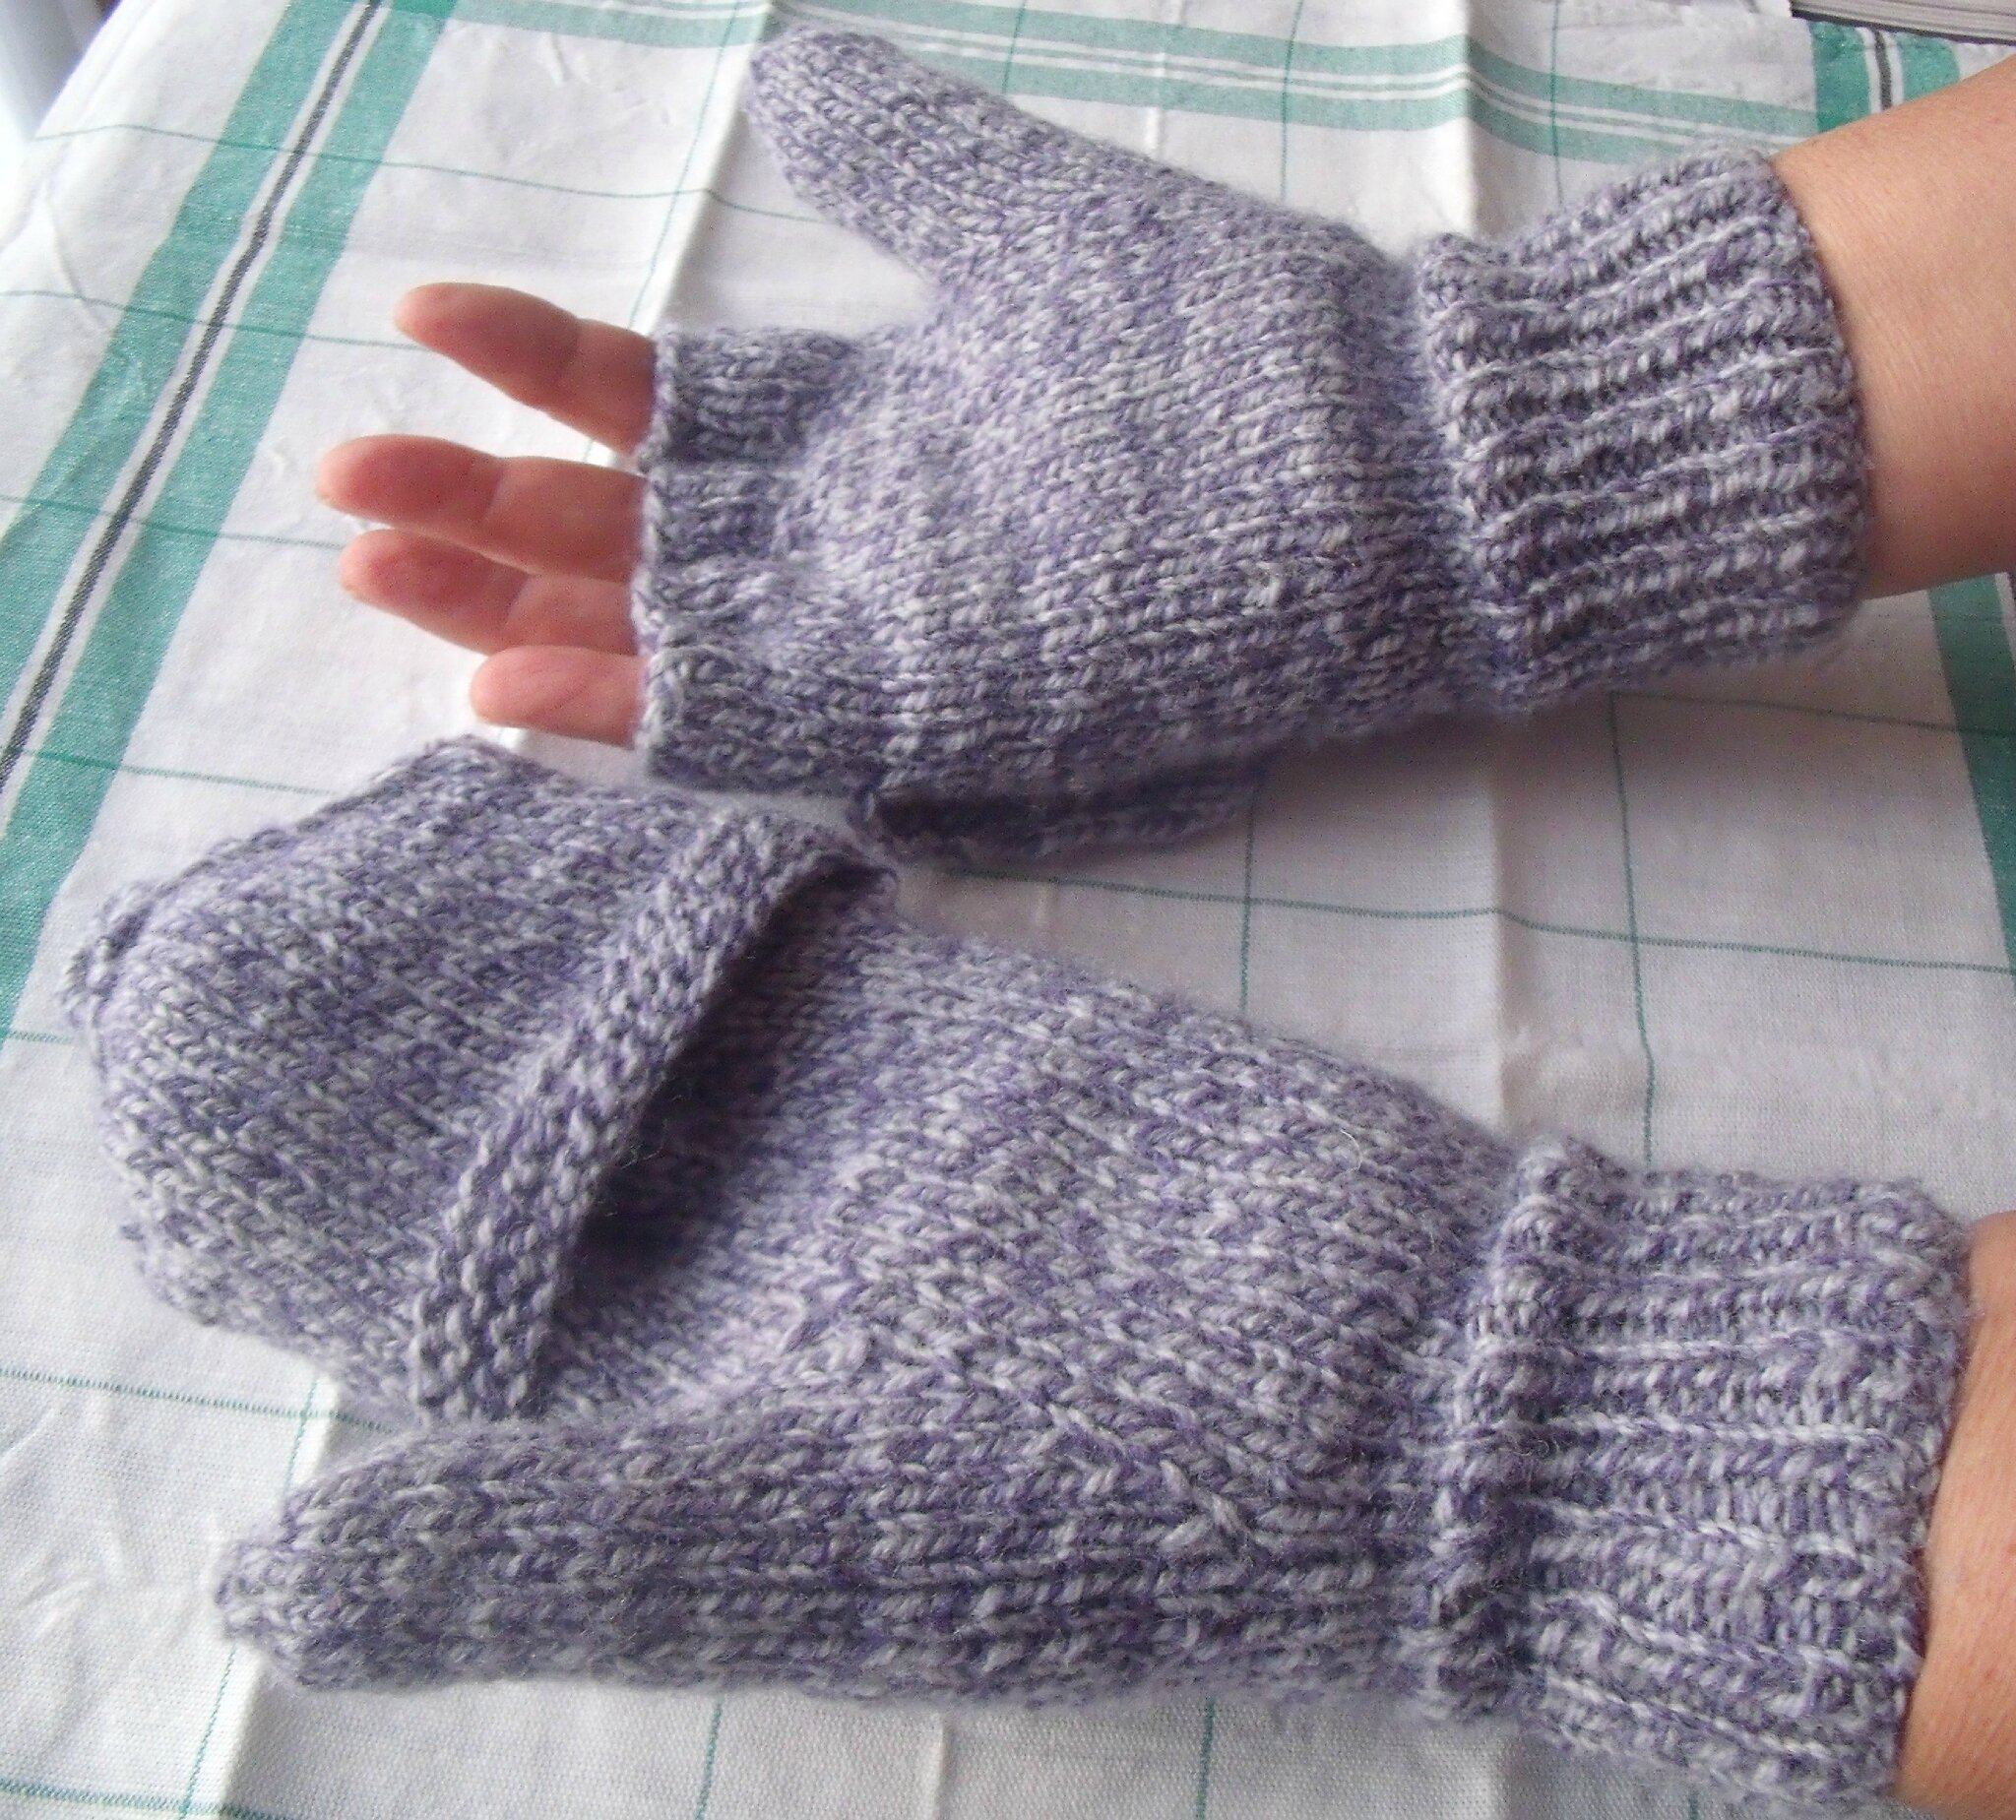 Modèles tricot gants et moufles - Bergère de France